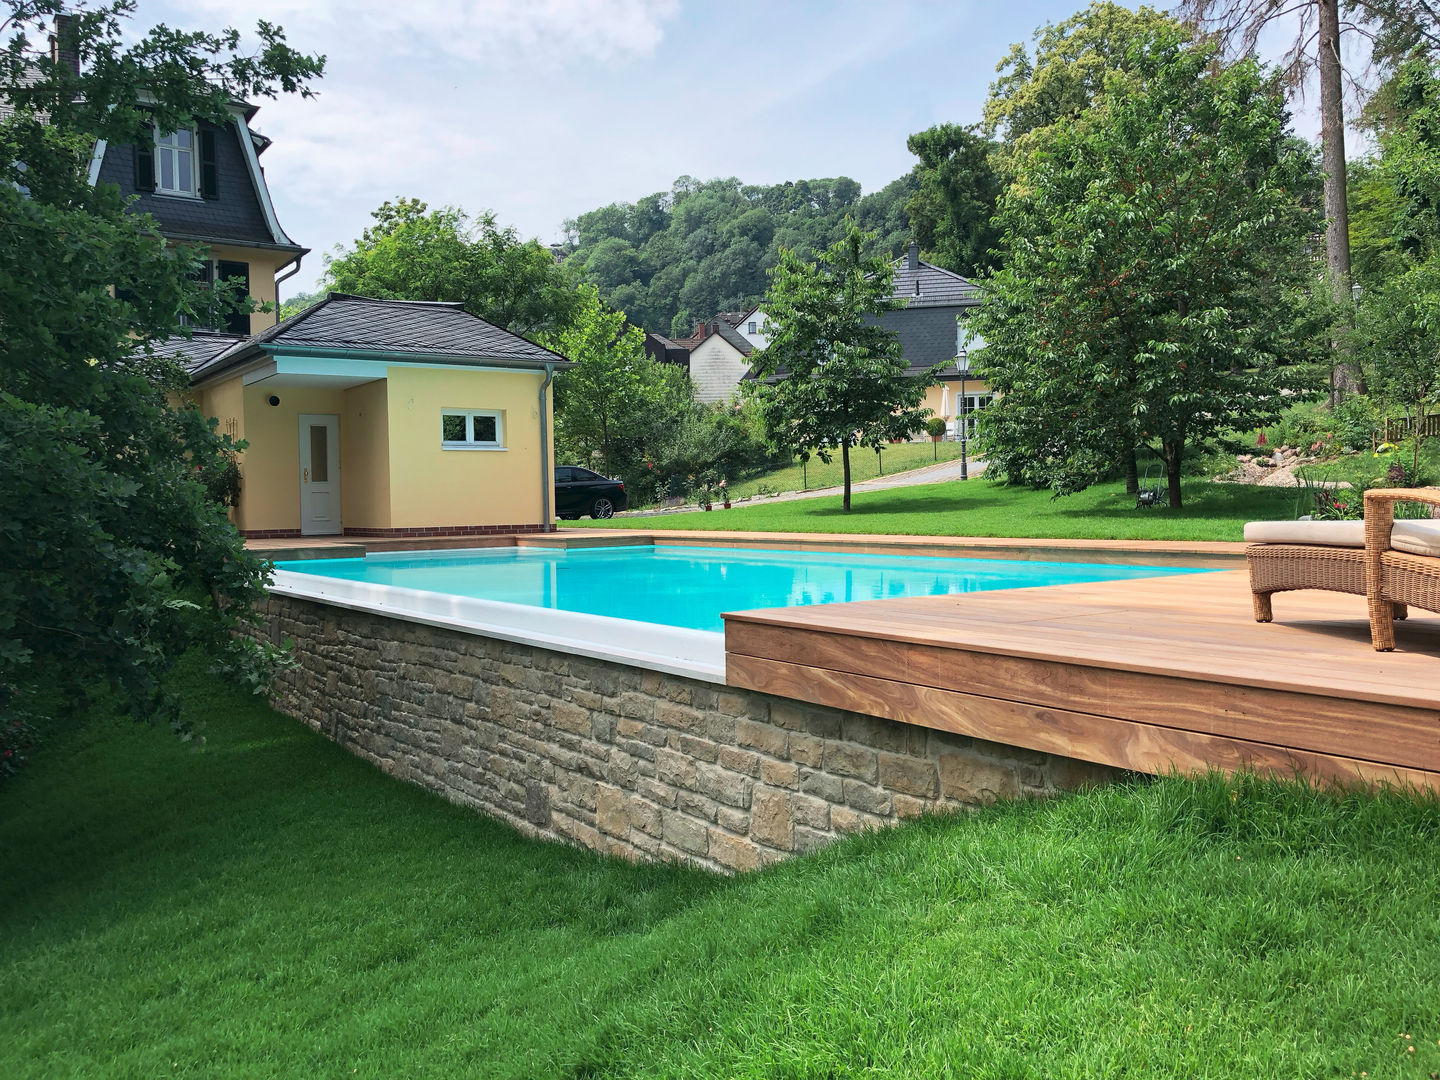 Infinity Pool in der Nähe von Frankfurt a.M., Kirchner Garten & Teich GmbH Kirchner Garten & Teich GmbH مسبح لانهائي